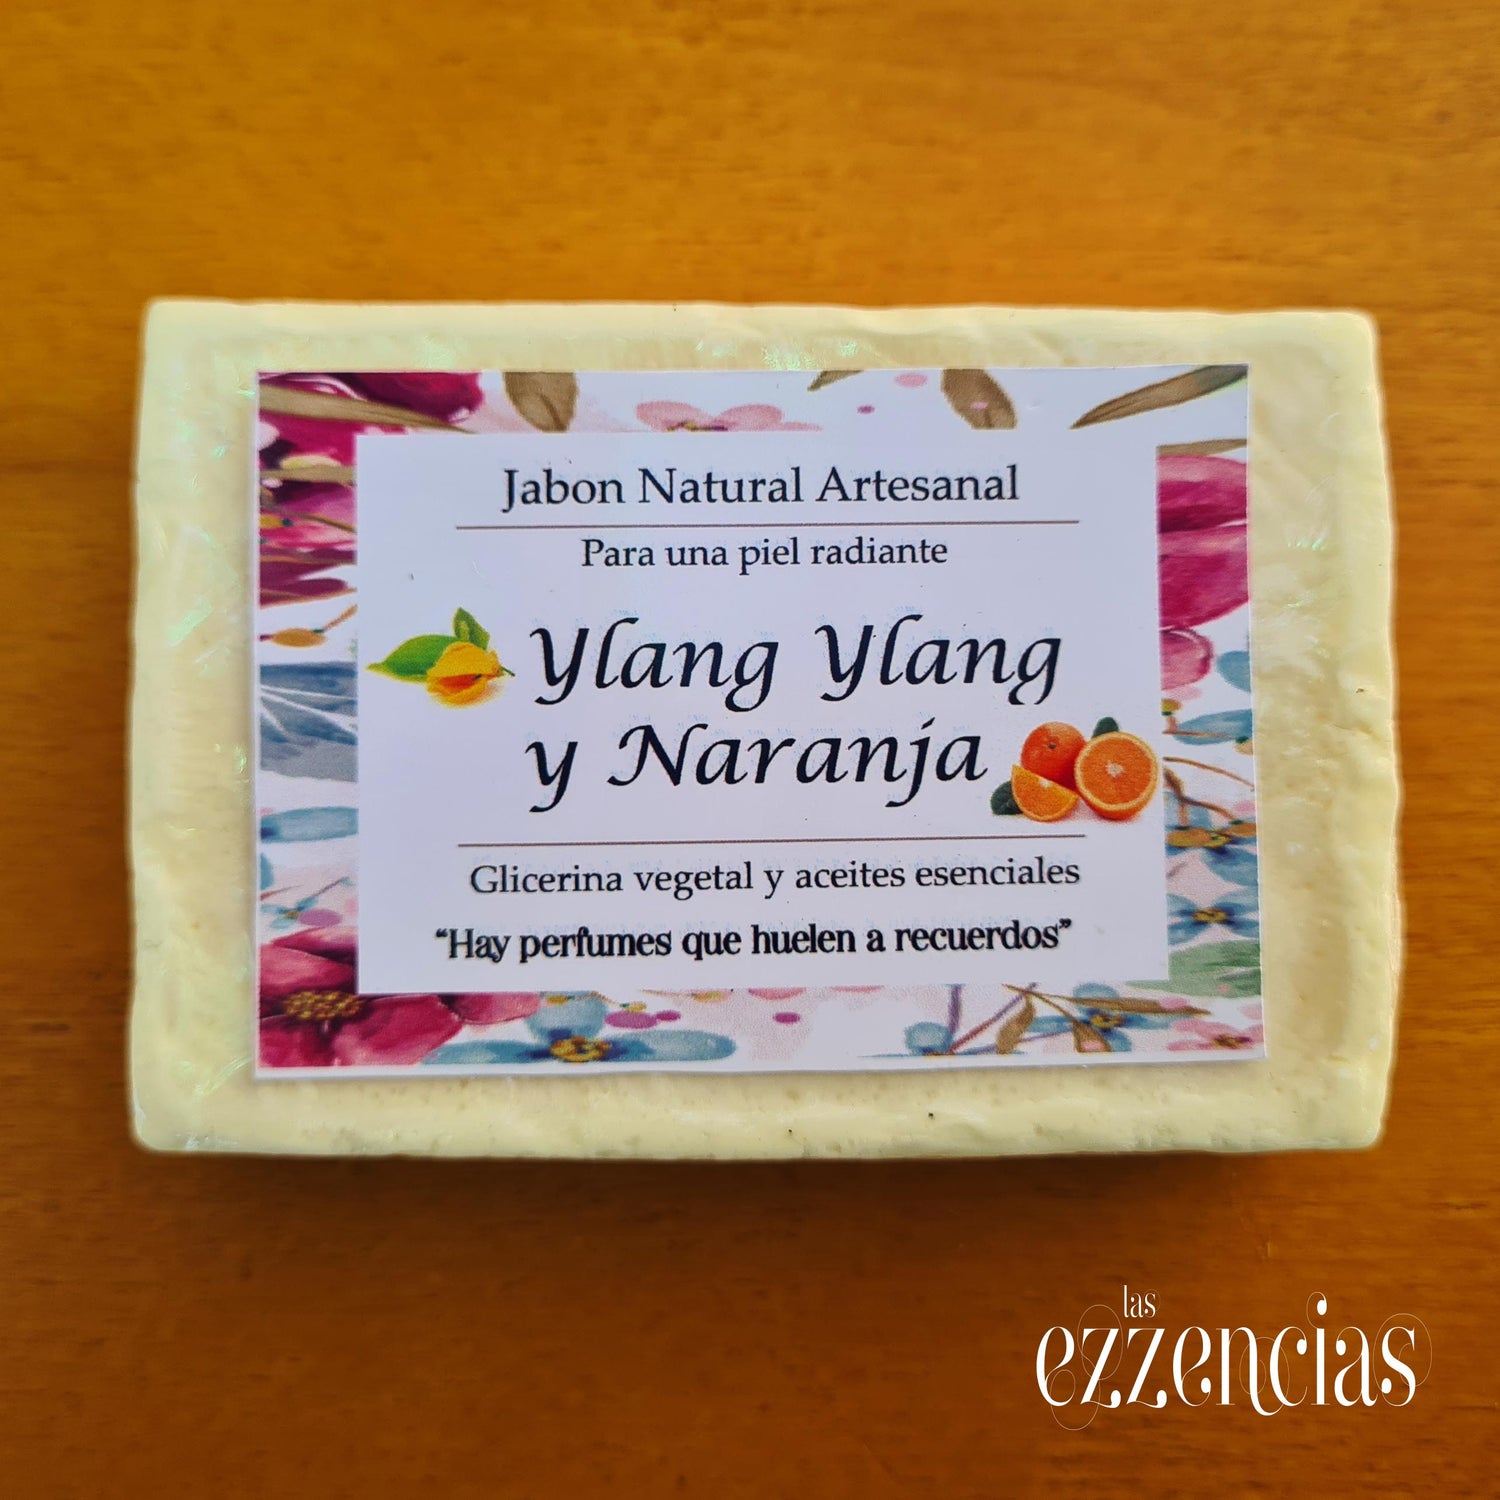 Jabón natural artesanal Ylang Ylang y Naranja